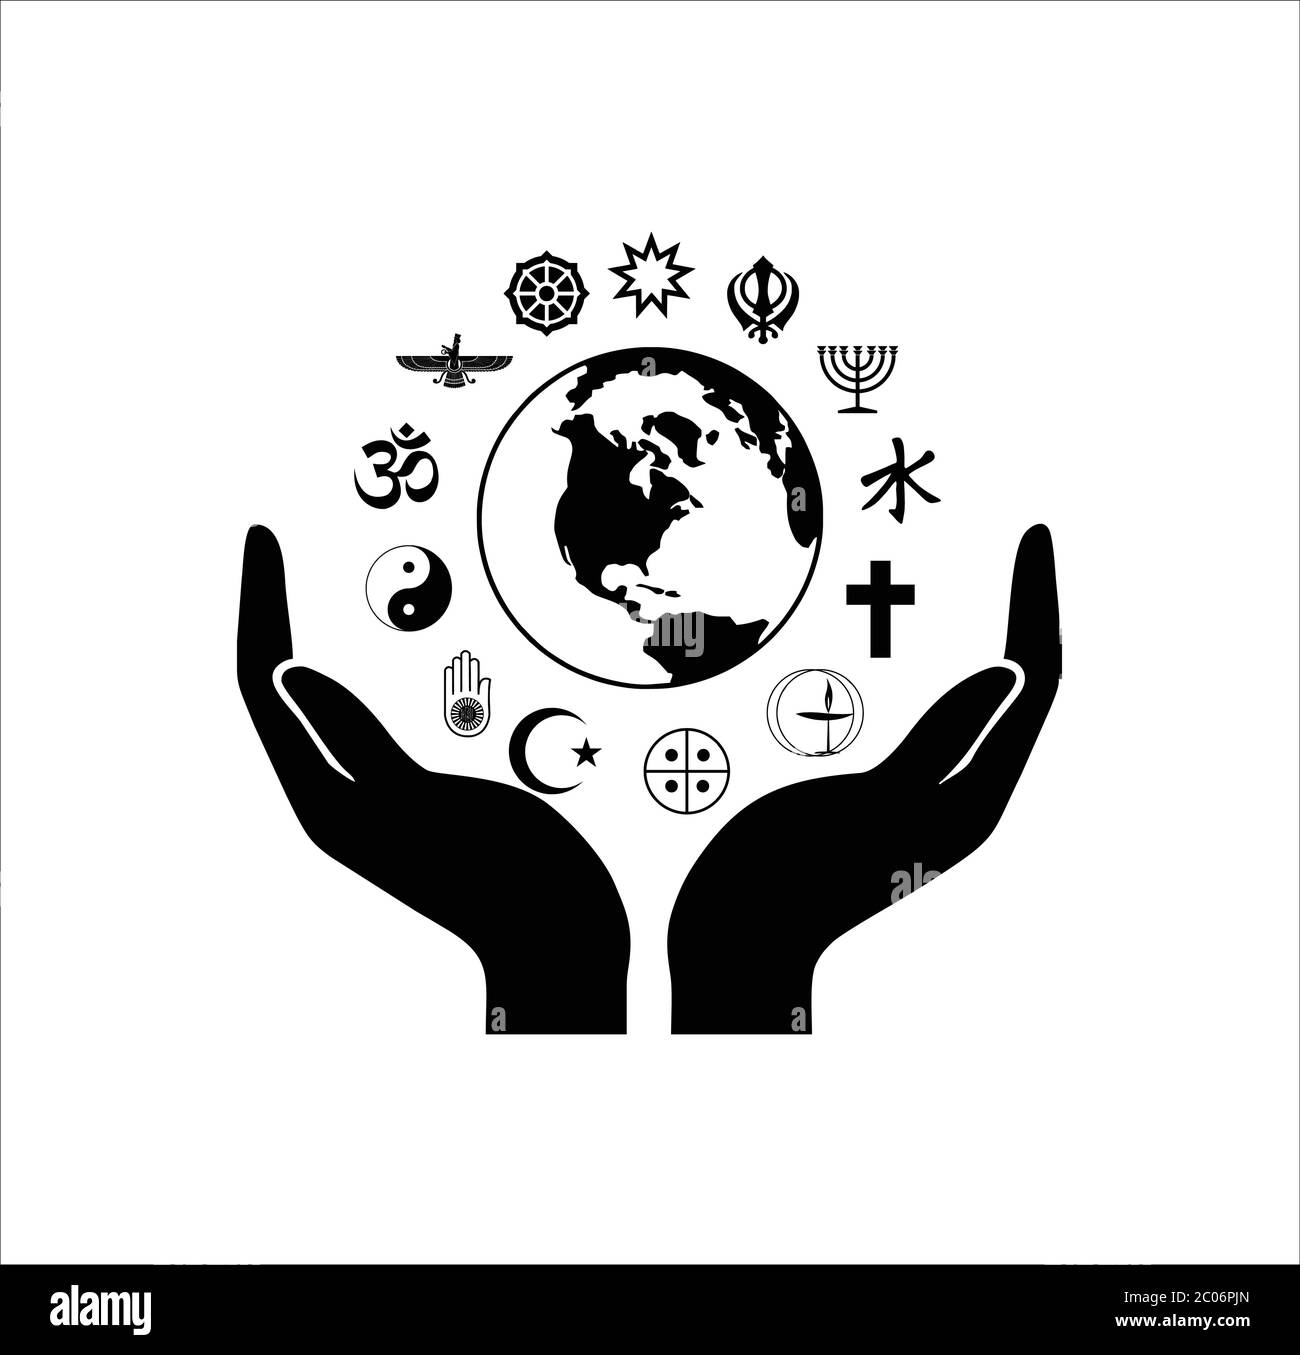 Symboles de religion du monde avec mains ouvertes et silhouette de globe terrestre Illustration de Vecteur